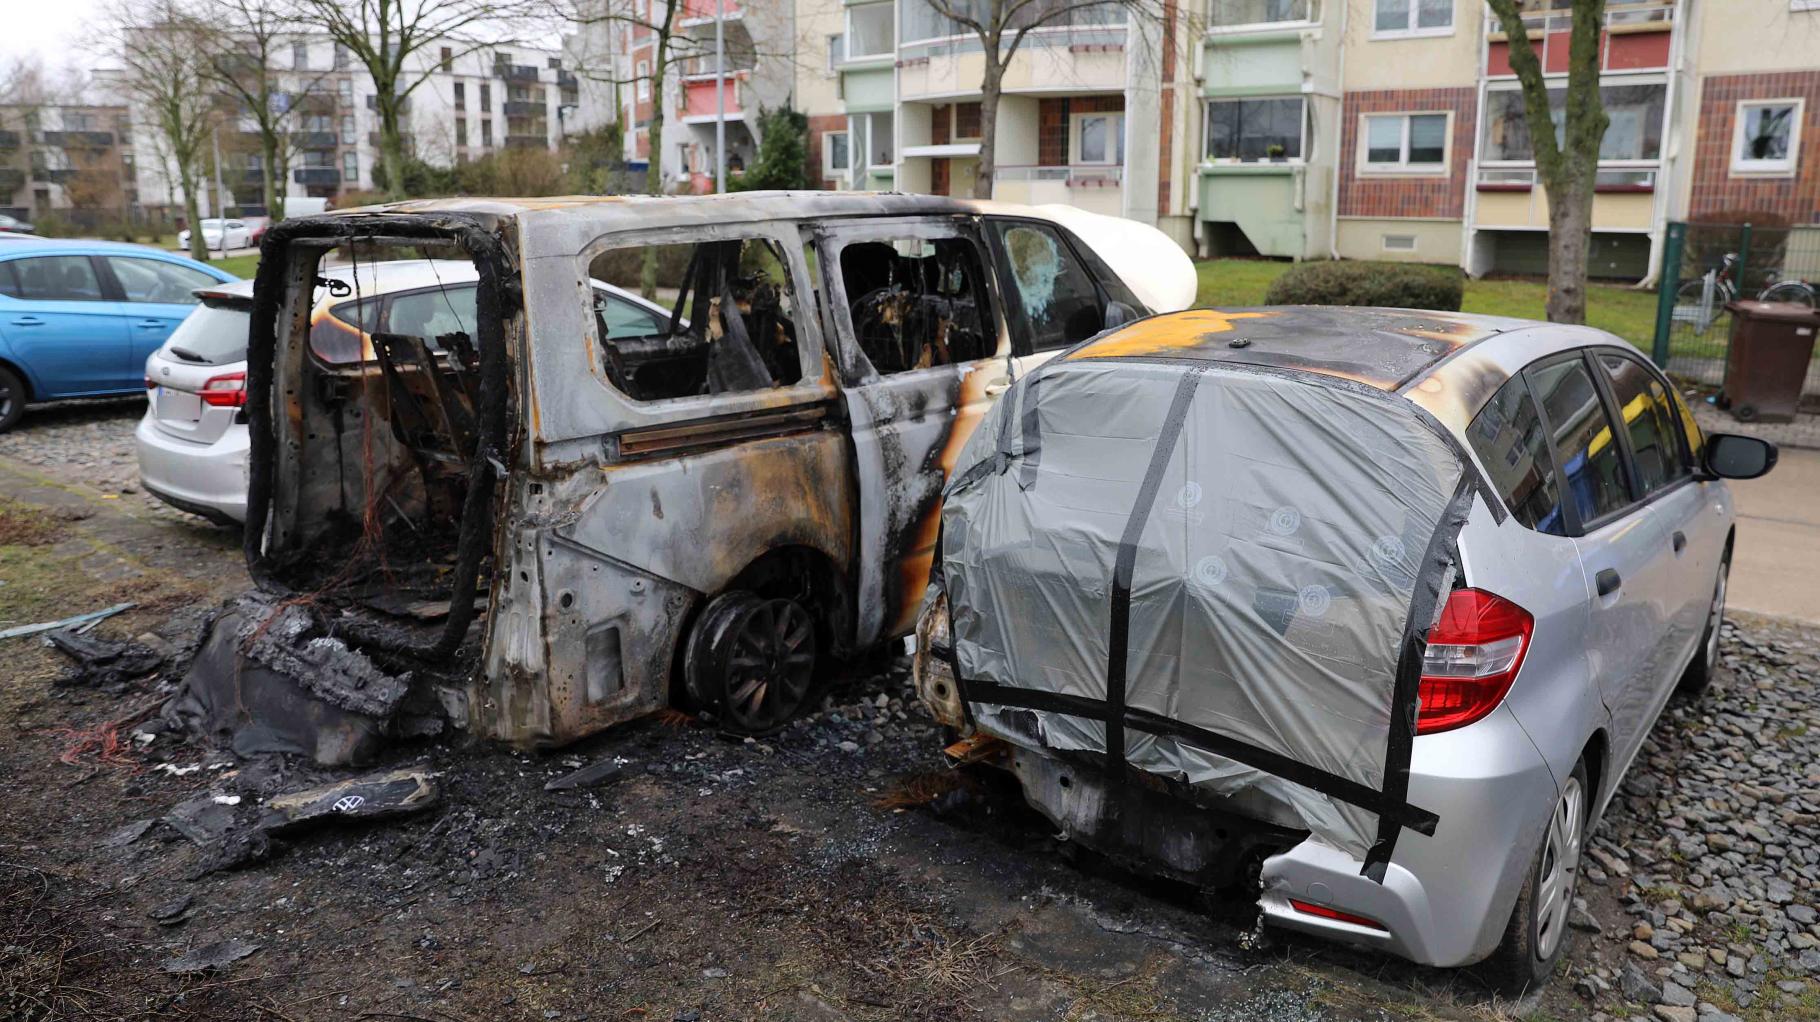 Drei Fahrzeuge zerstört und beschädigt: Unbekannte zünden in Rostock Transporter an